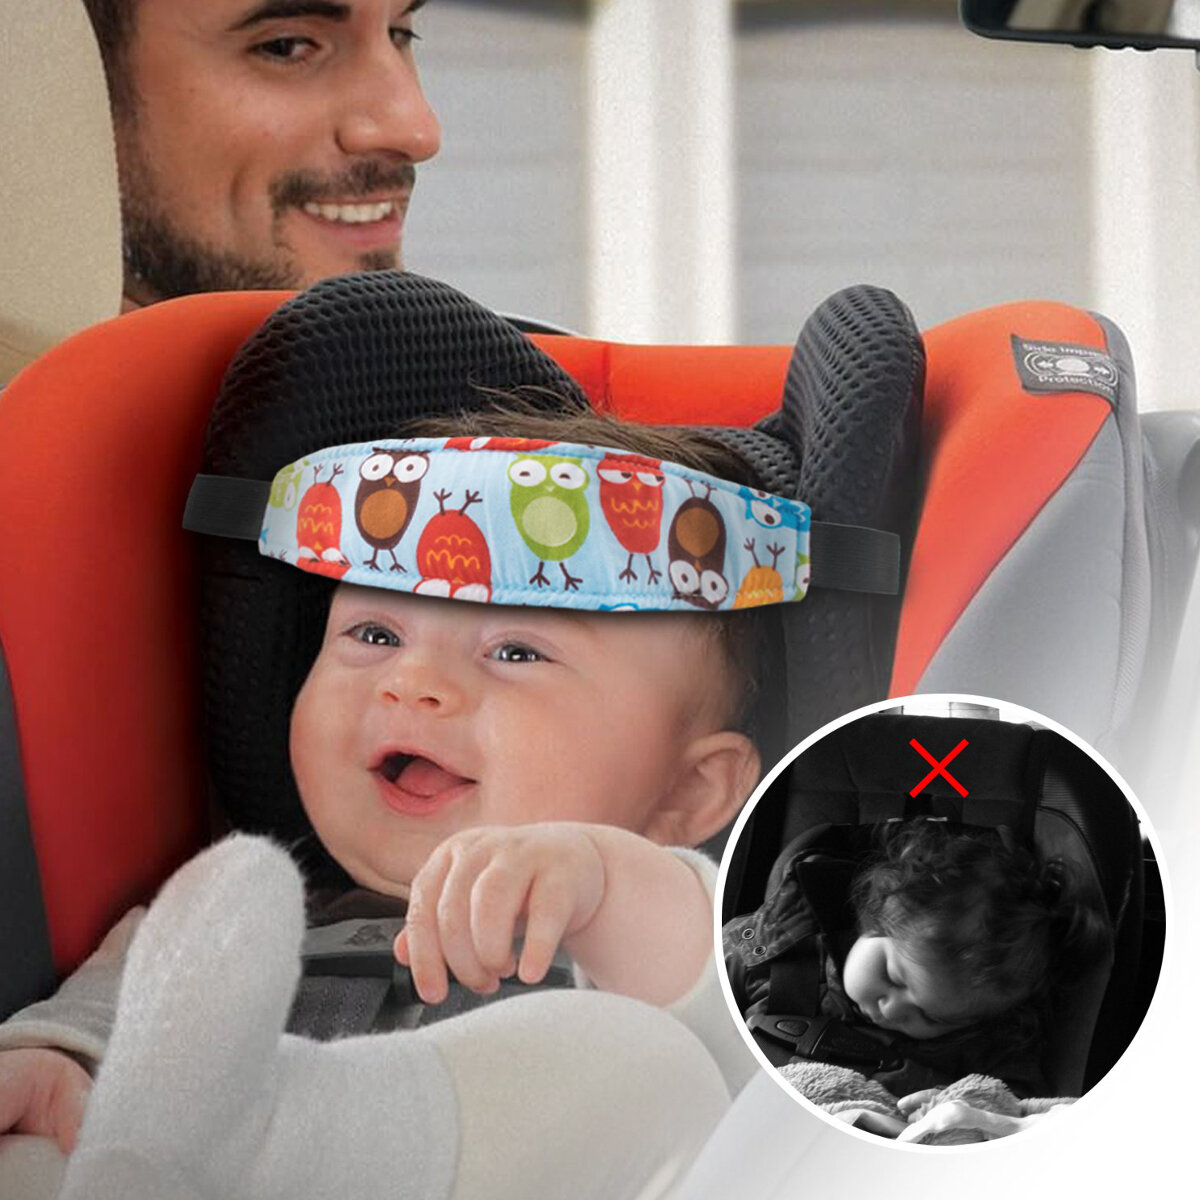 

Детская головная опора для коляски Sleep Nap Aid Ремень безопасности Авто Крепление сиденья Ремень US